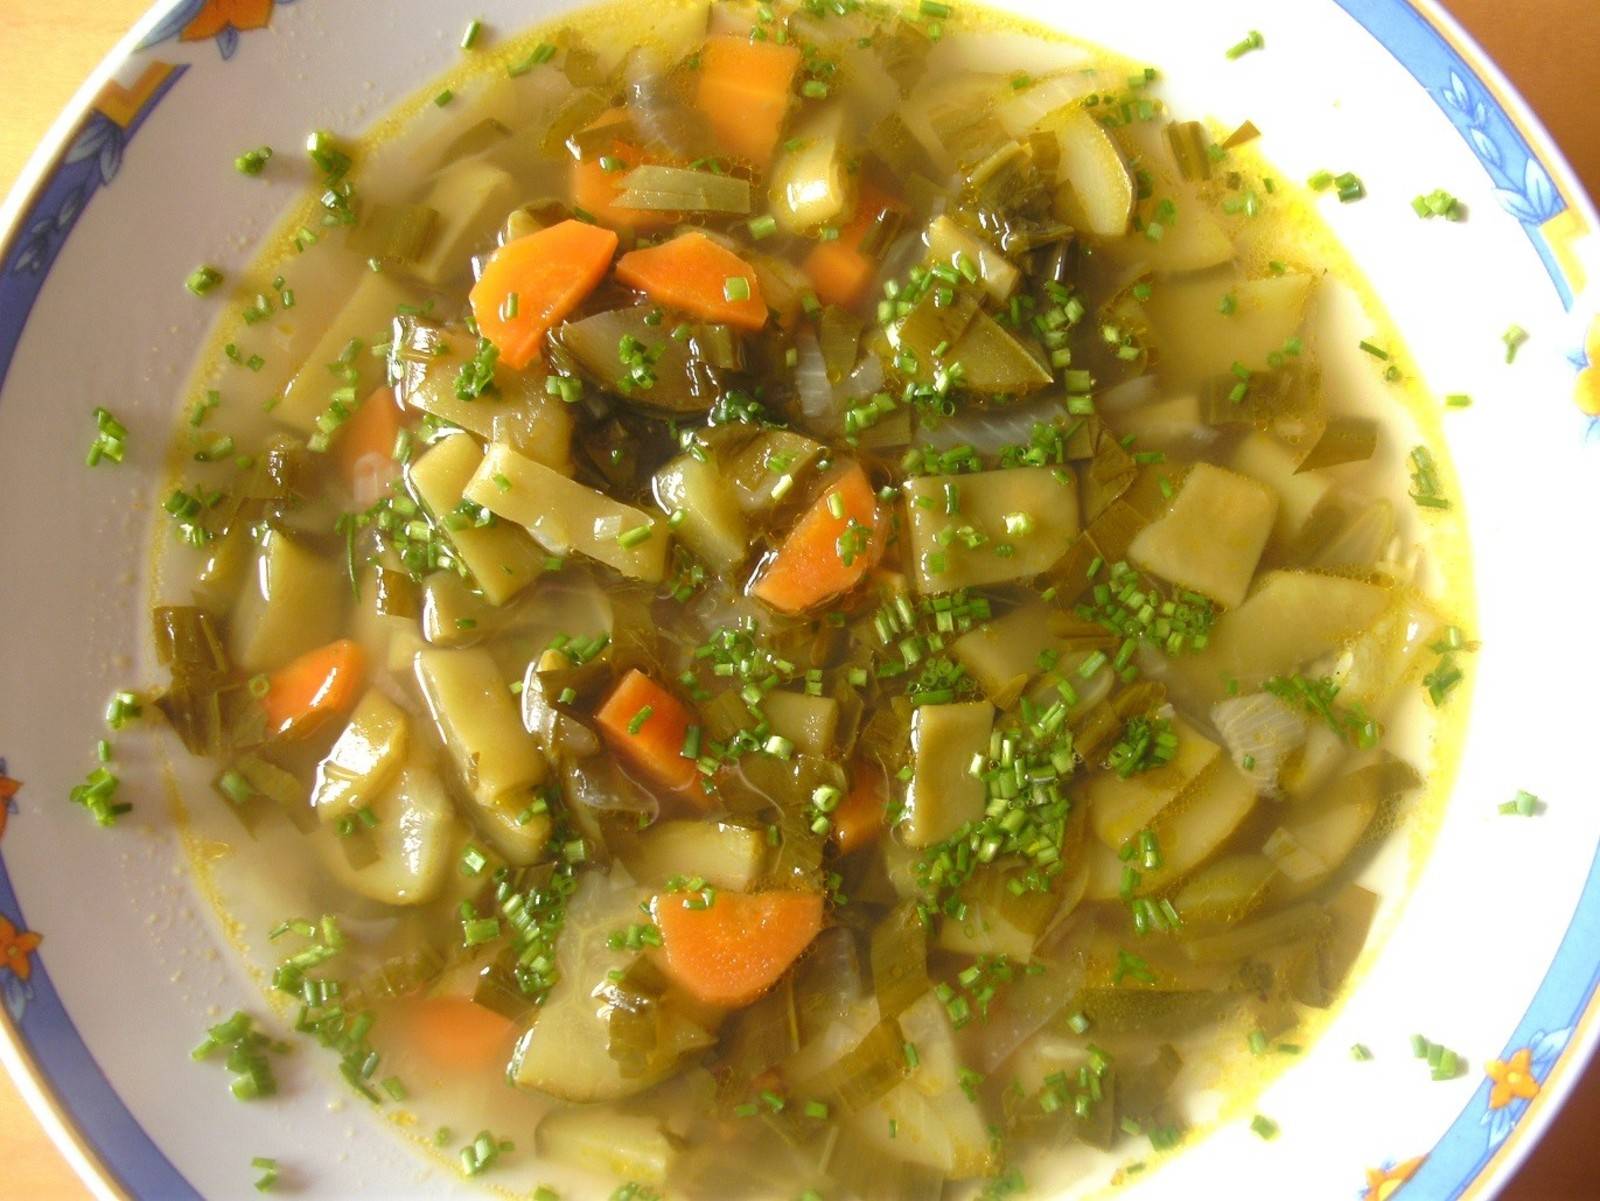 Gemüsesuppe mit Bärlauch